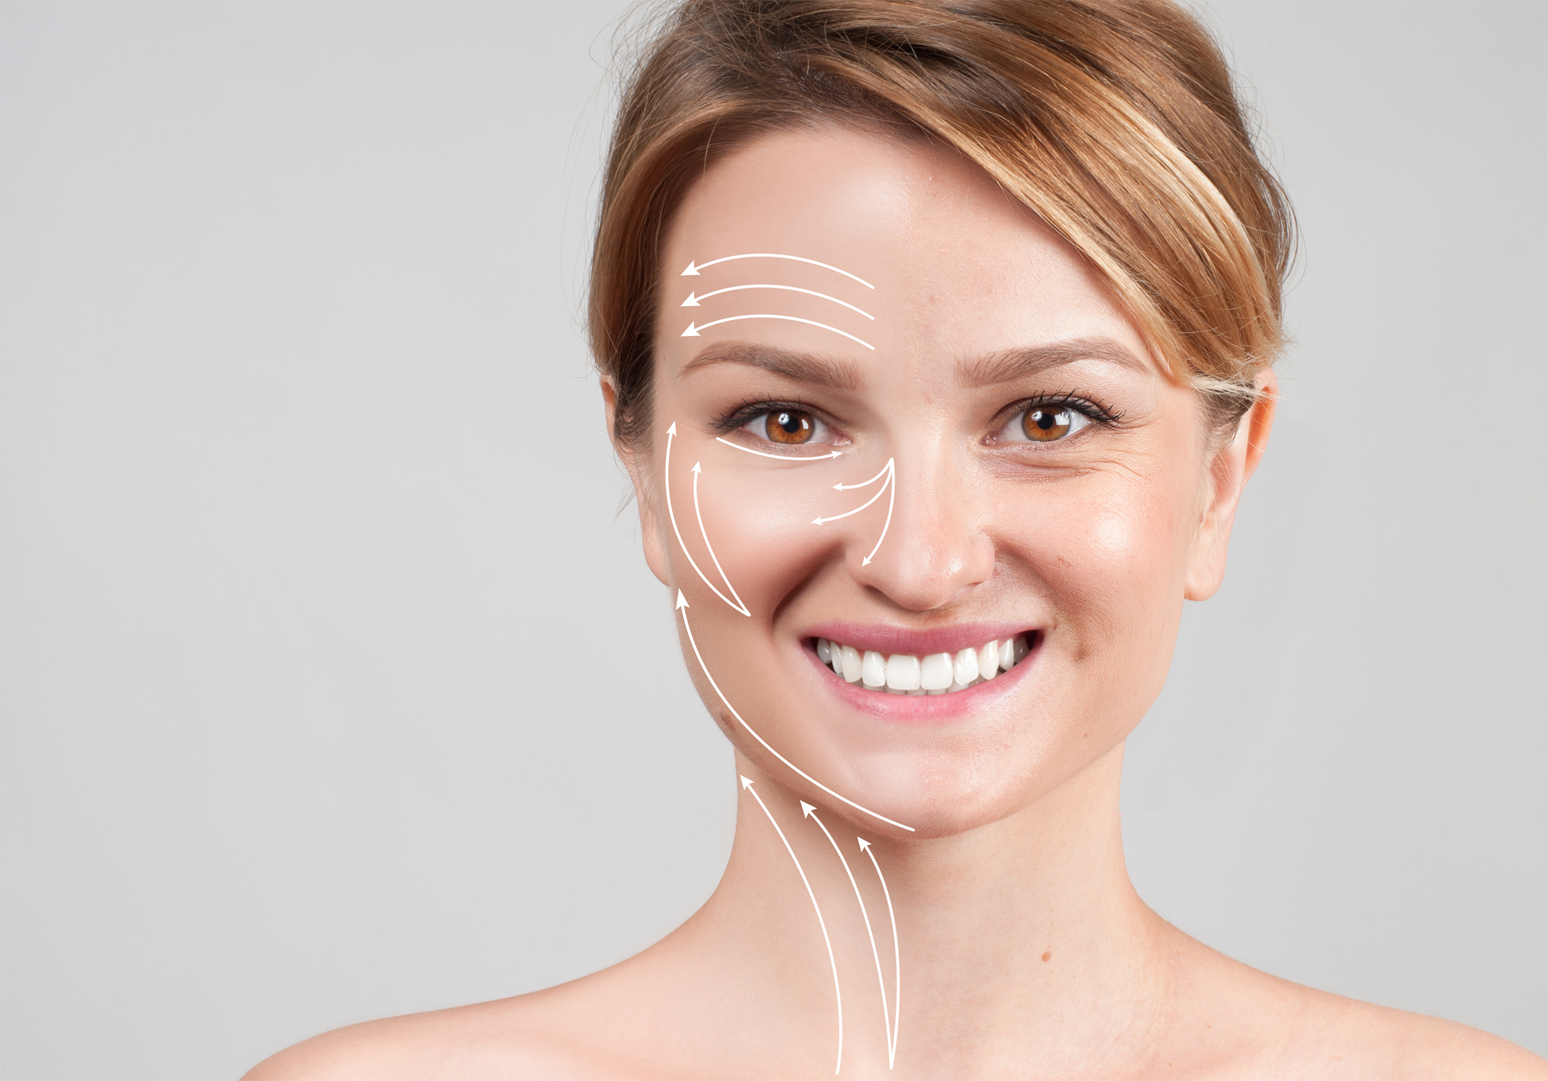 10 Mitos Sobre a Harmonização Facial